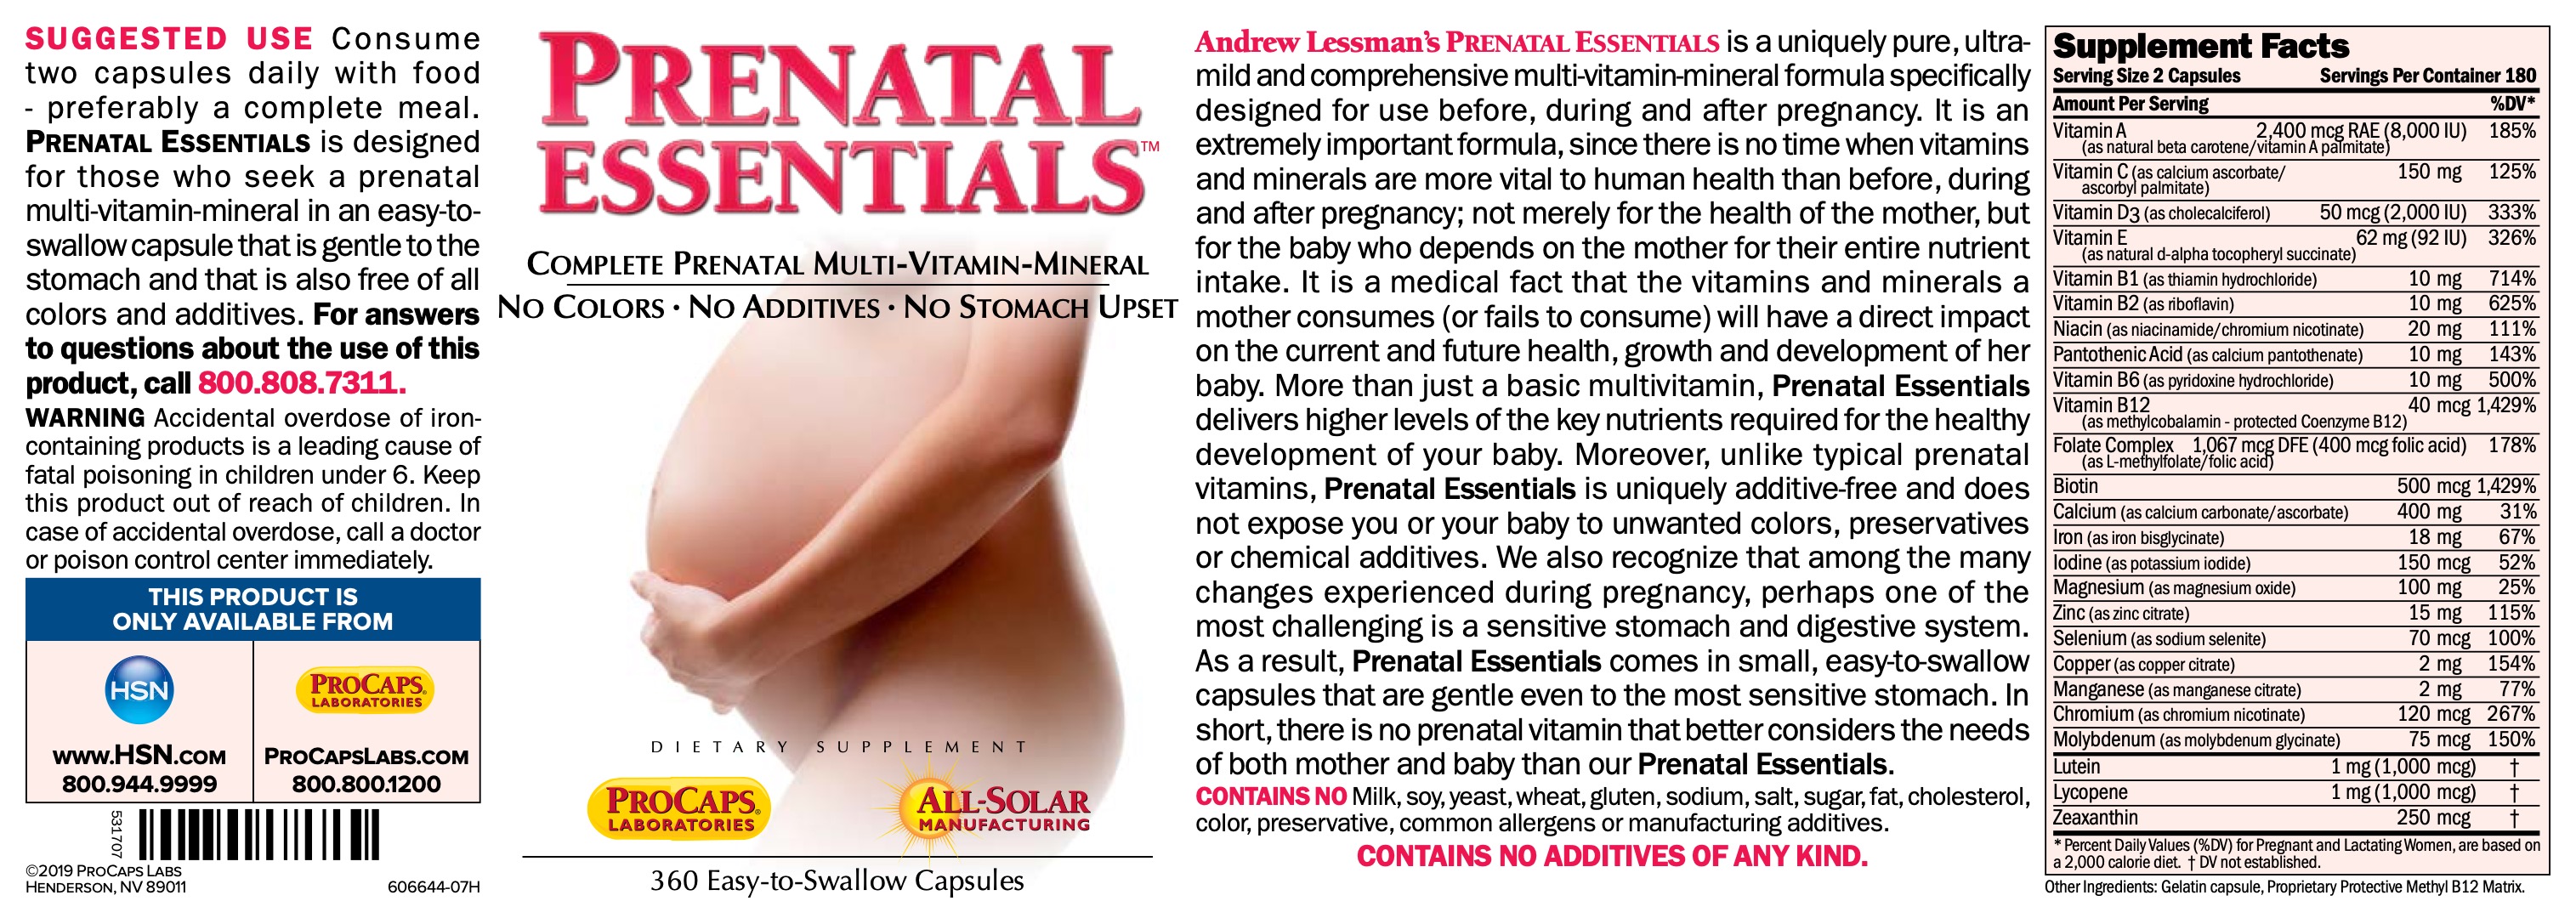 Prenatal-Essentials-Capsules-Multivitamins